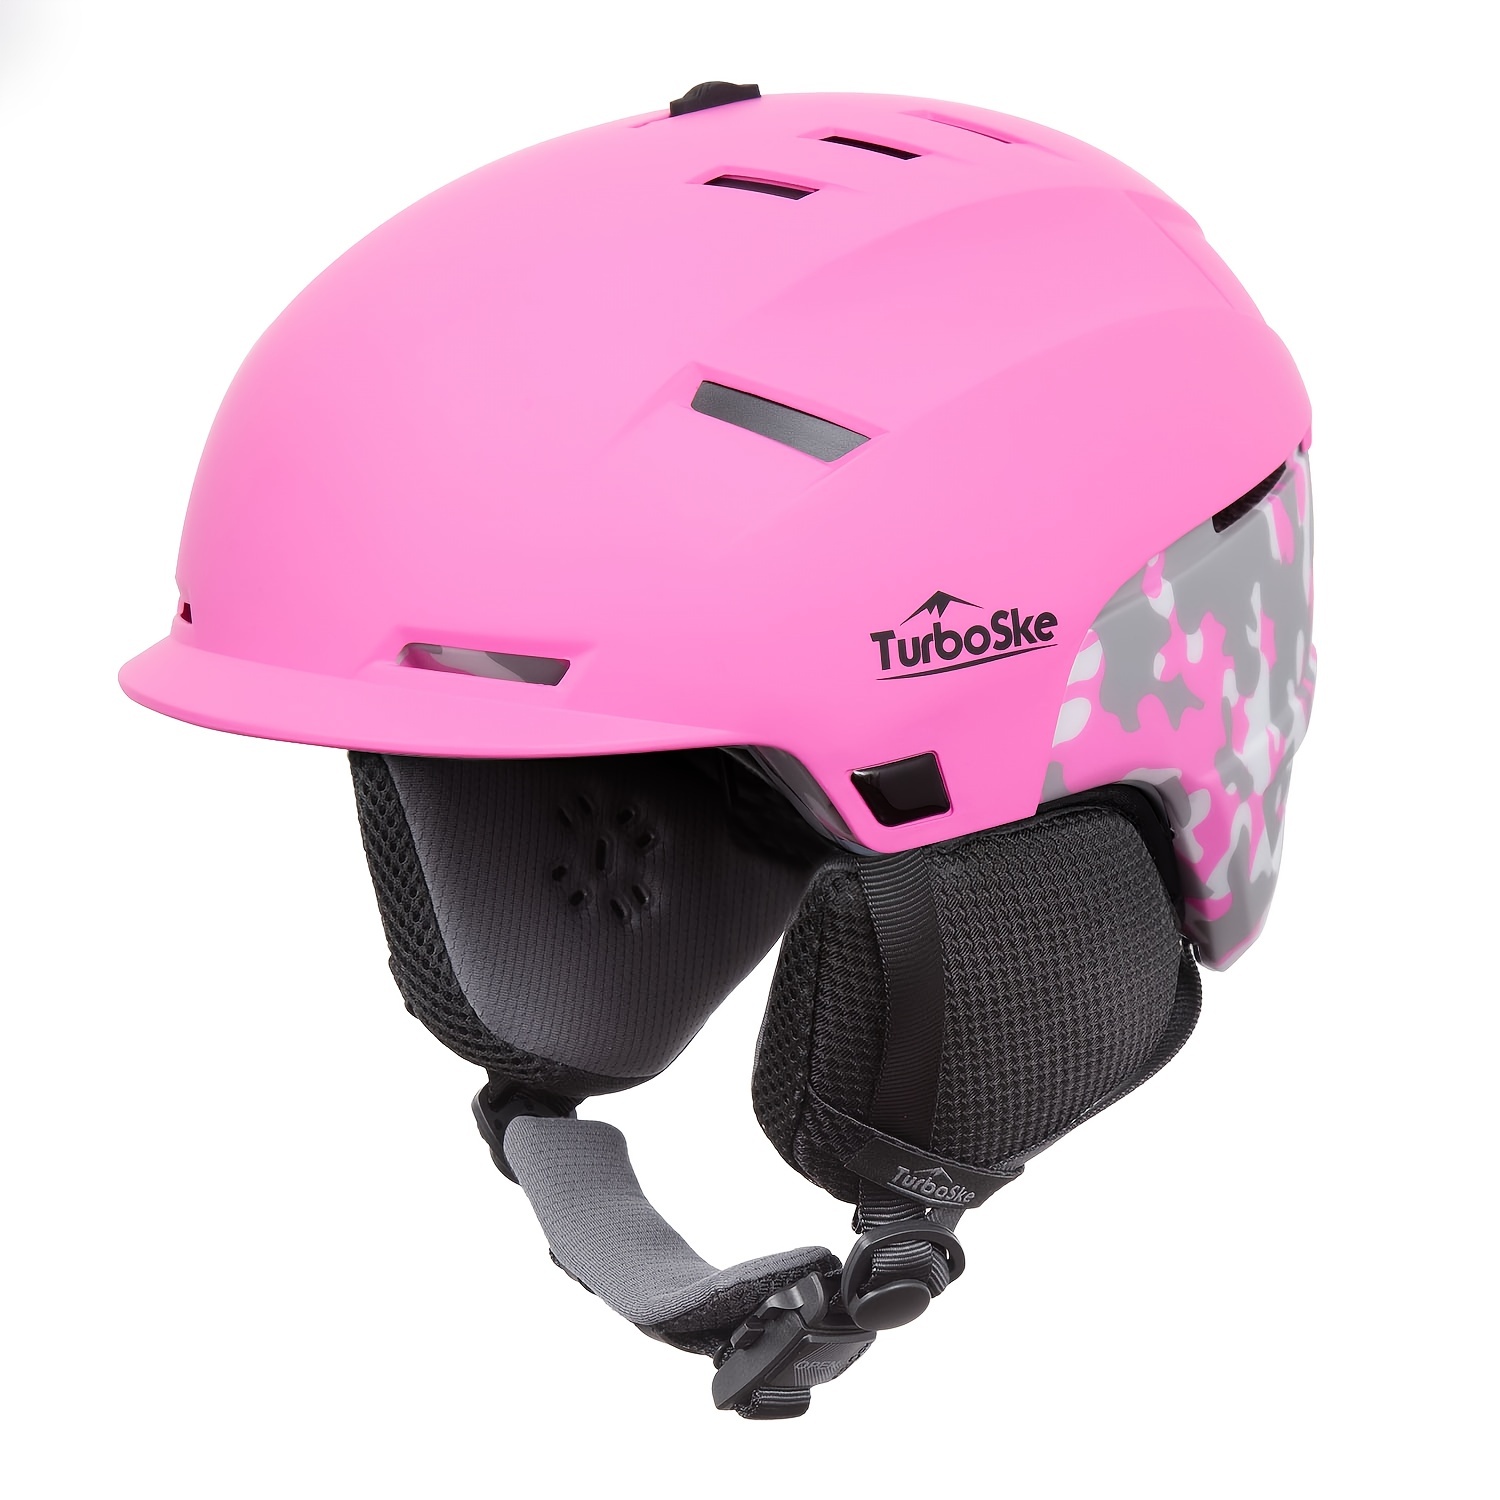 TurboSke - Casco de esquí, casco de snowboard para deportes de nieve,  compatible con audio y ligero, casco estándar ASTM para hombres, mujeres y